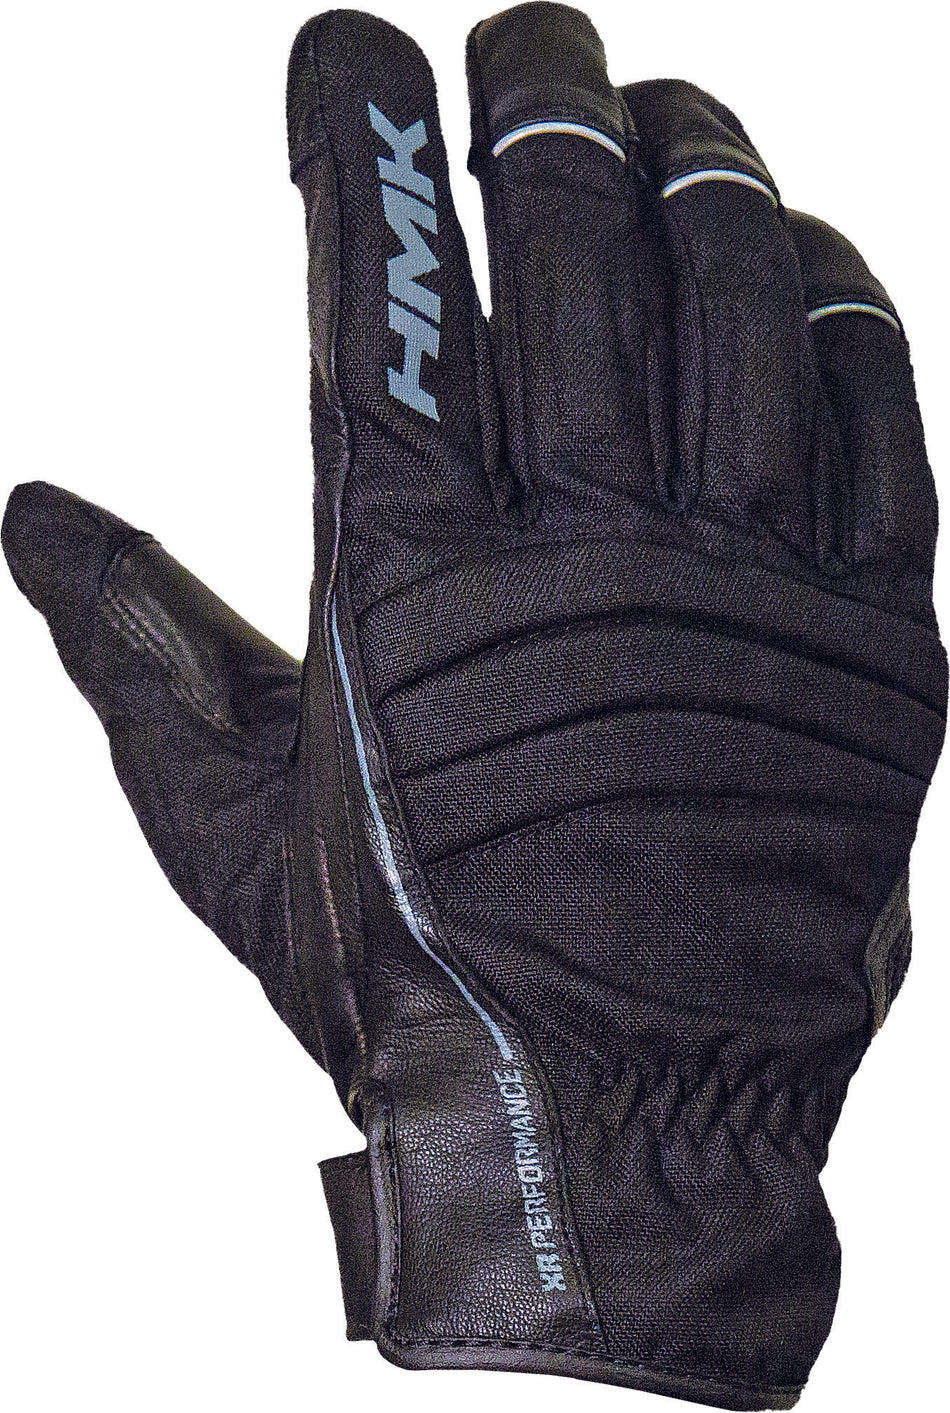 HMK Team Glove 3x S/M Black HM7GTEAB3X